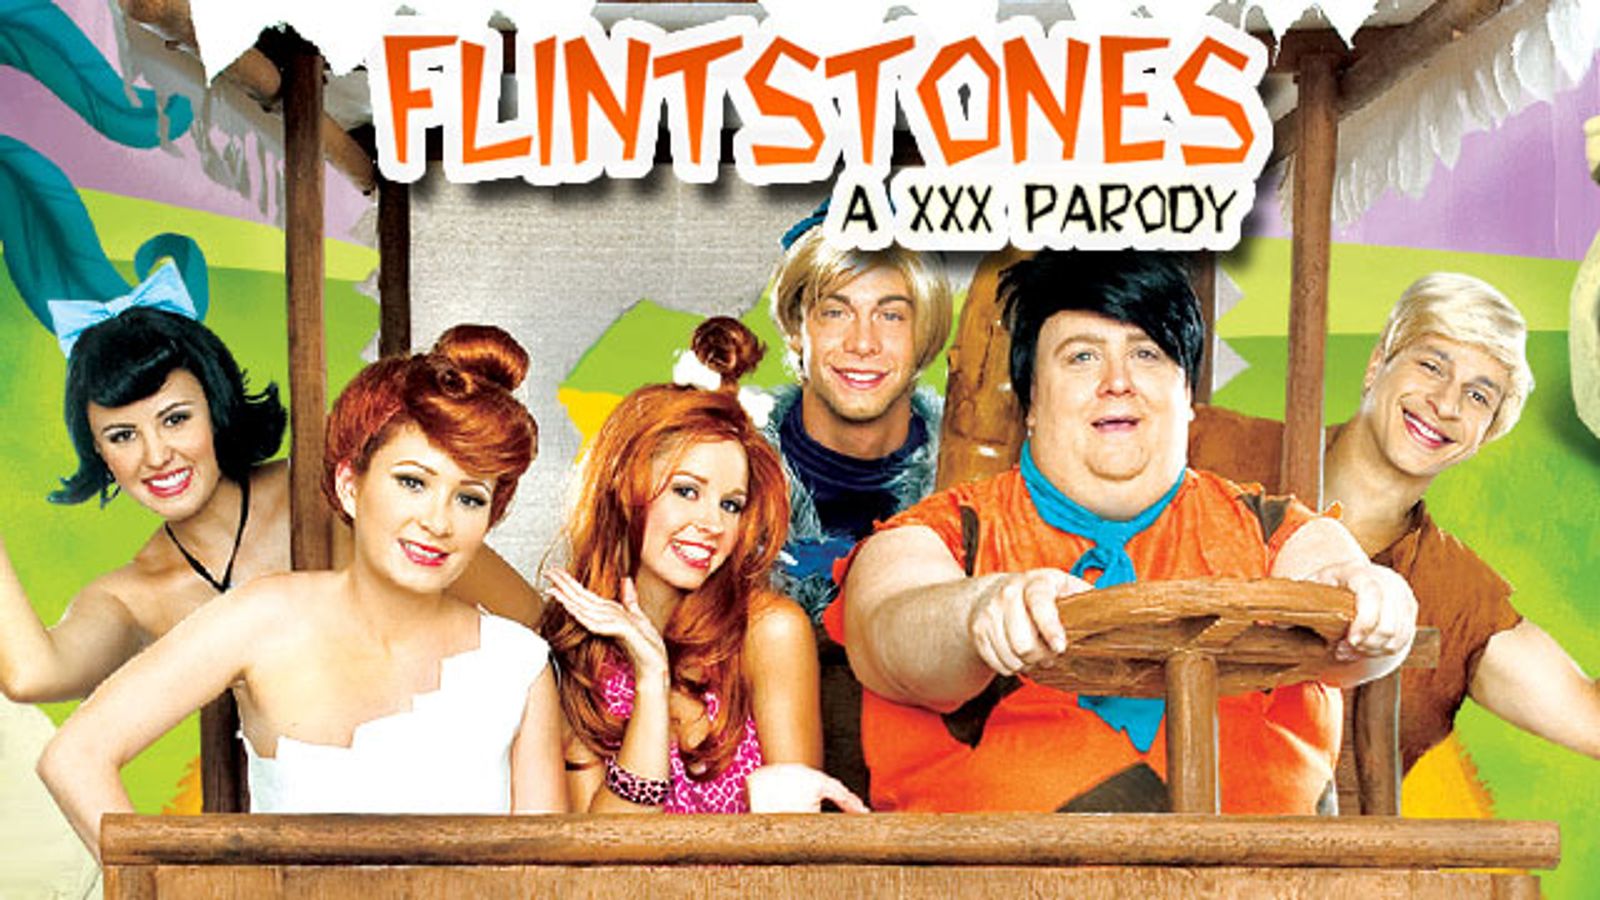 The flintstones a xxx parody